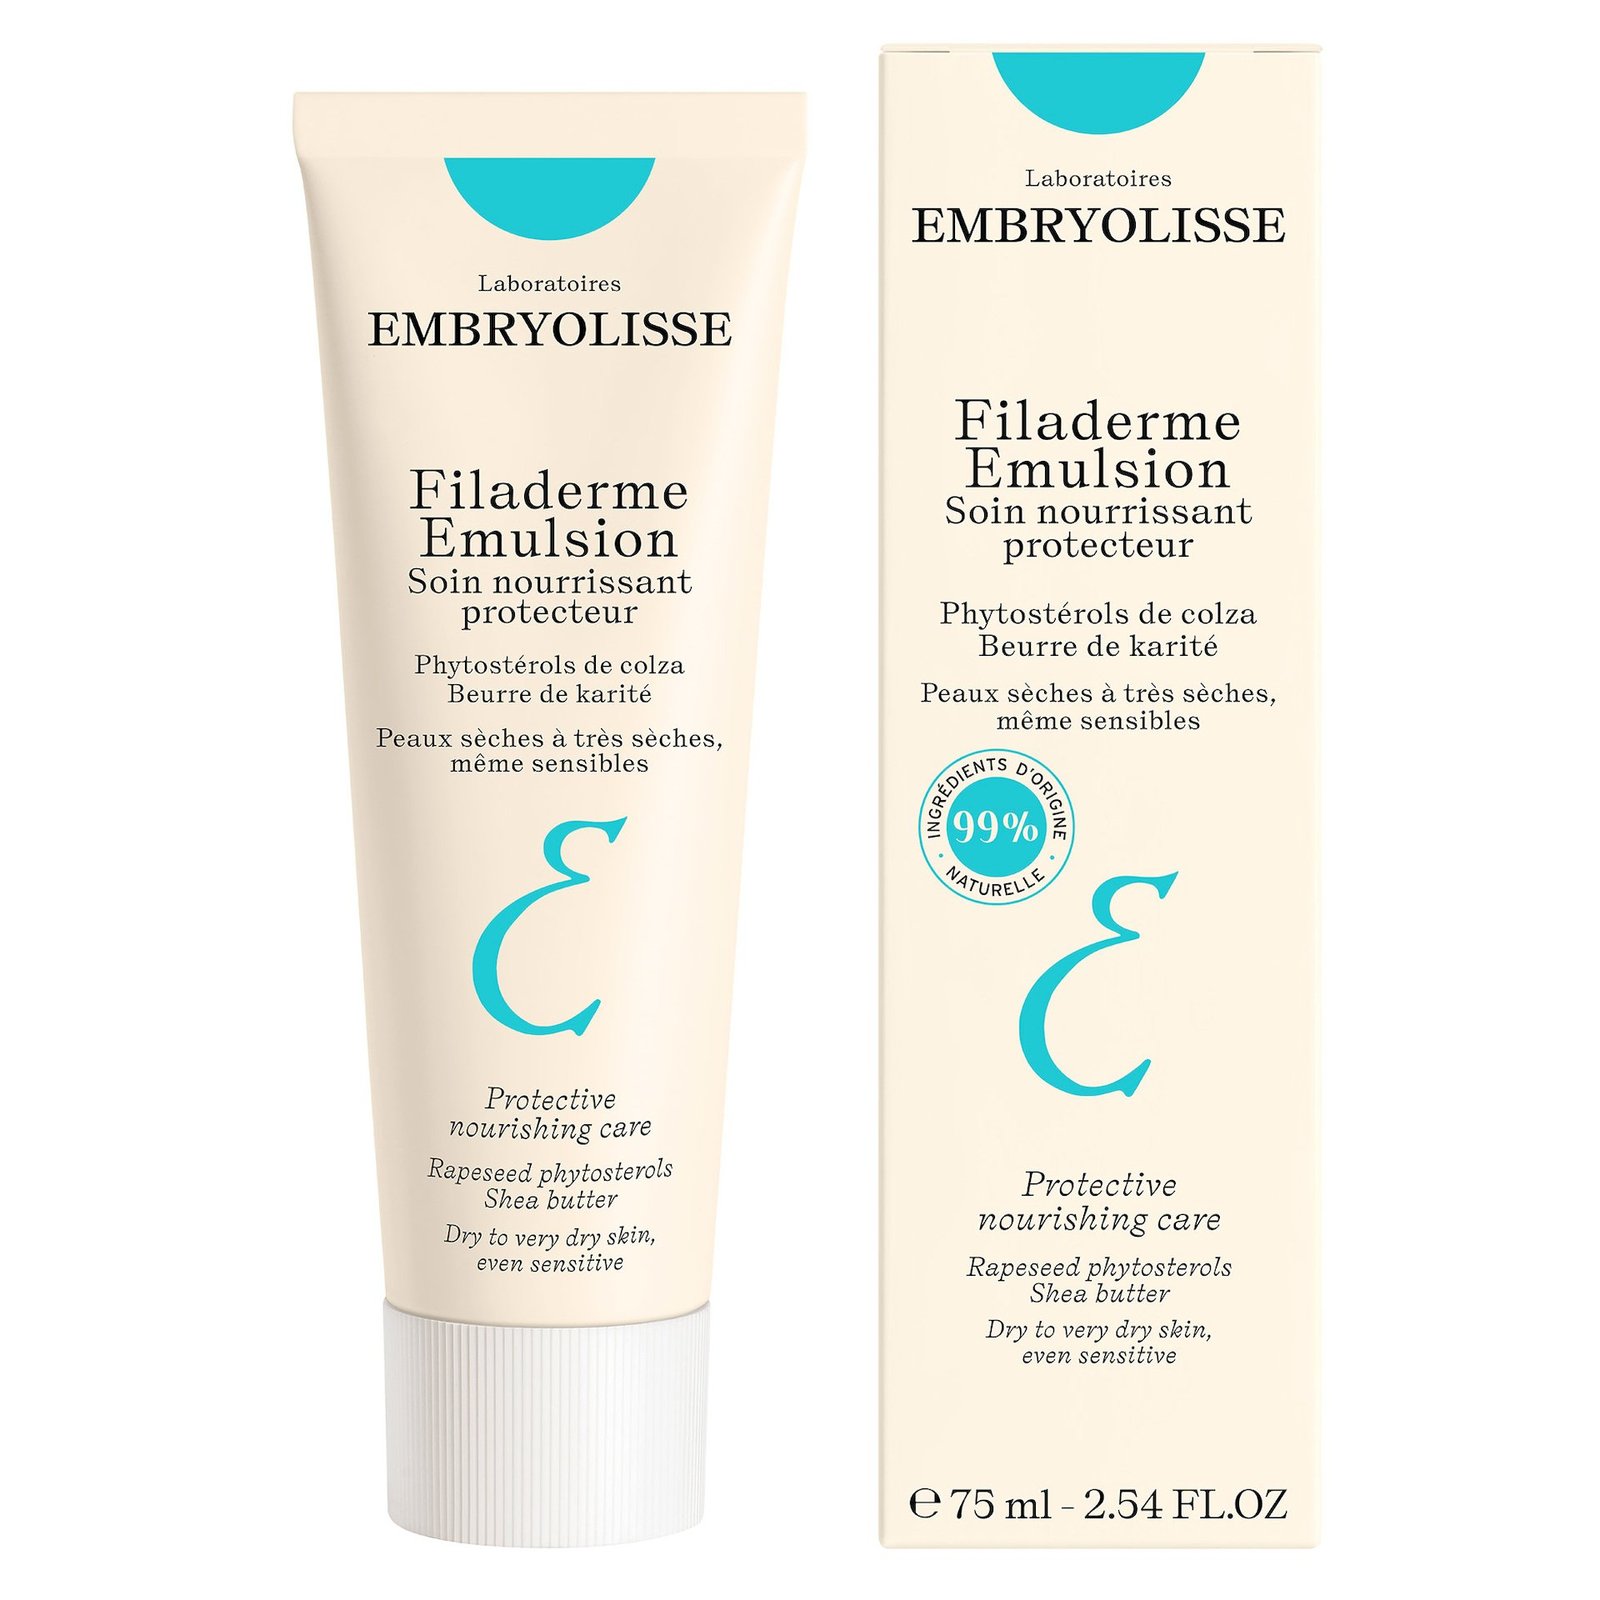 Embryolisee Filaderm Emulsion 75 ml